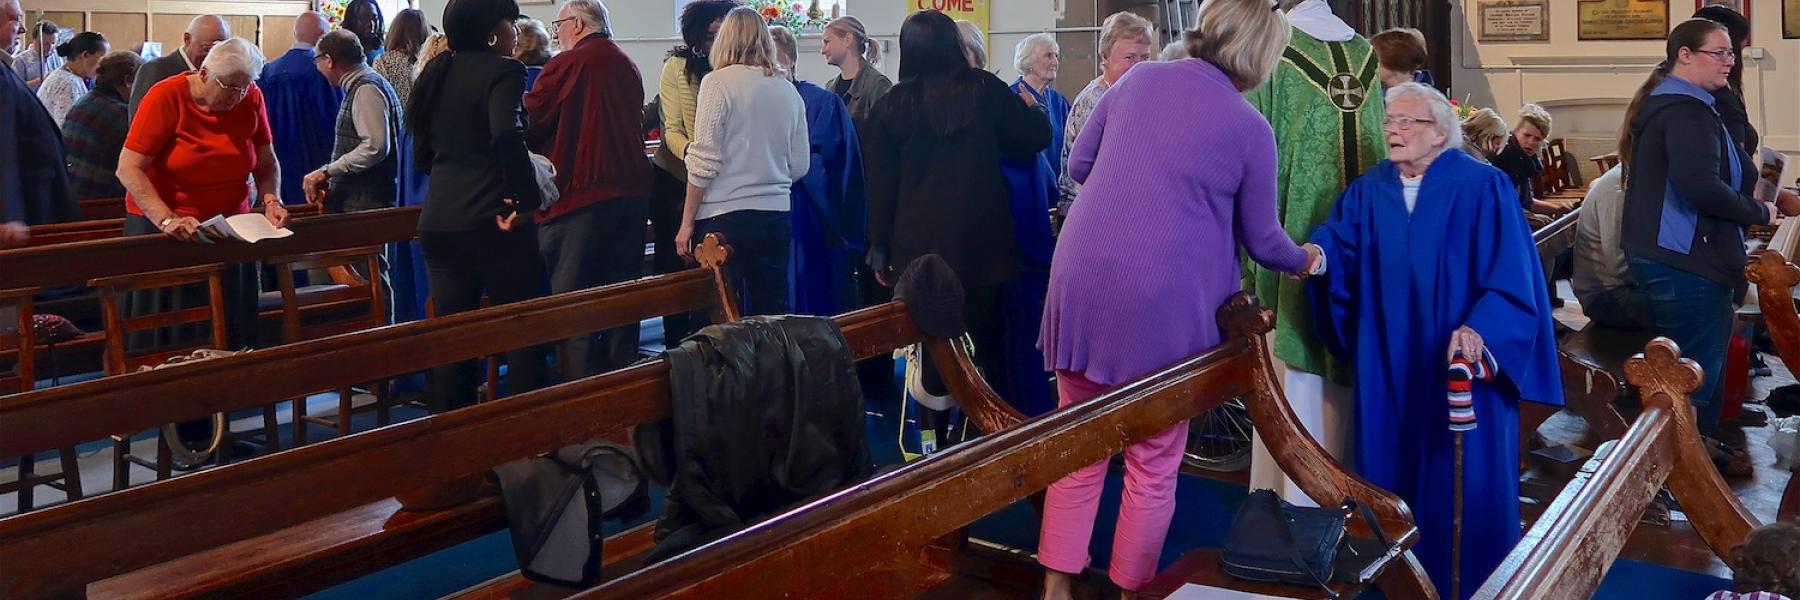 worship at St Andrews & St Albans Mottingham